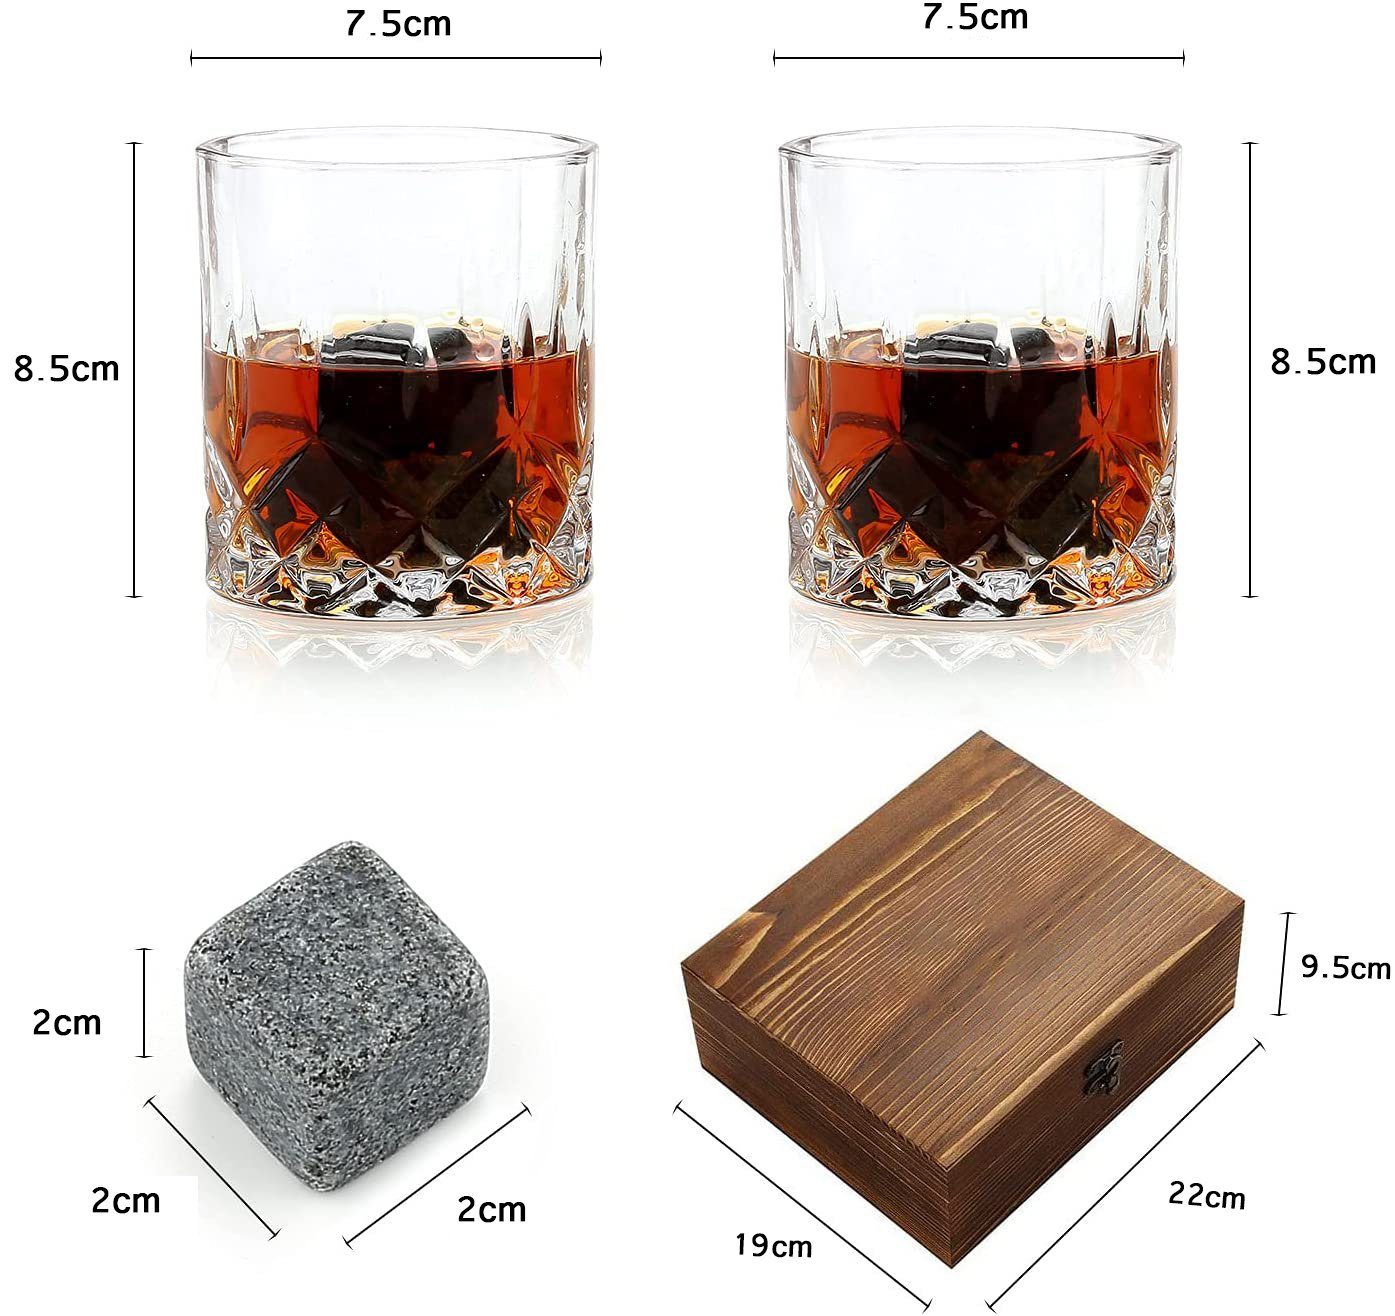 Vaxiuja Gläsern 2 Geschenkset Whiskey Eiswürfelform mit Stones